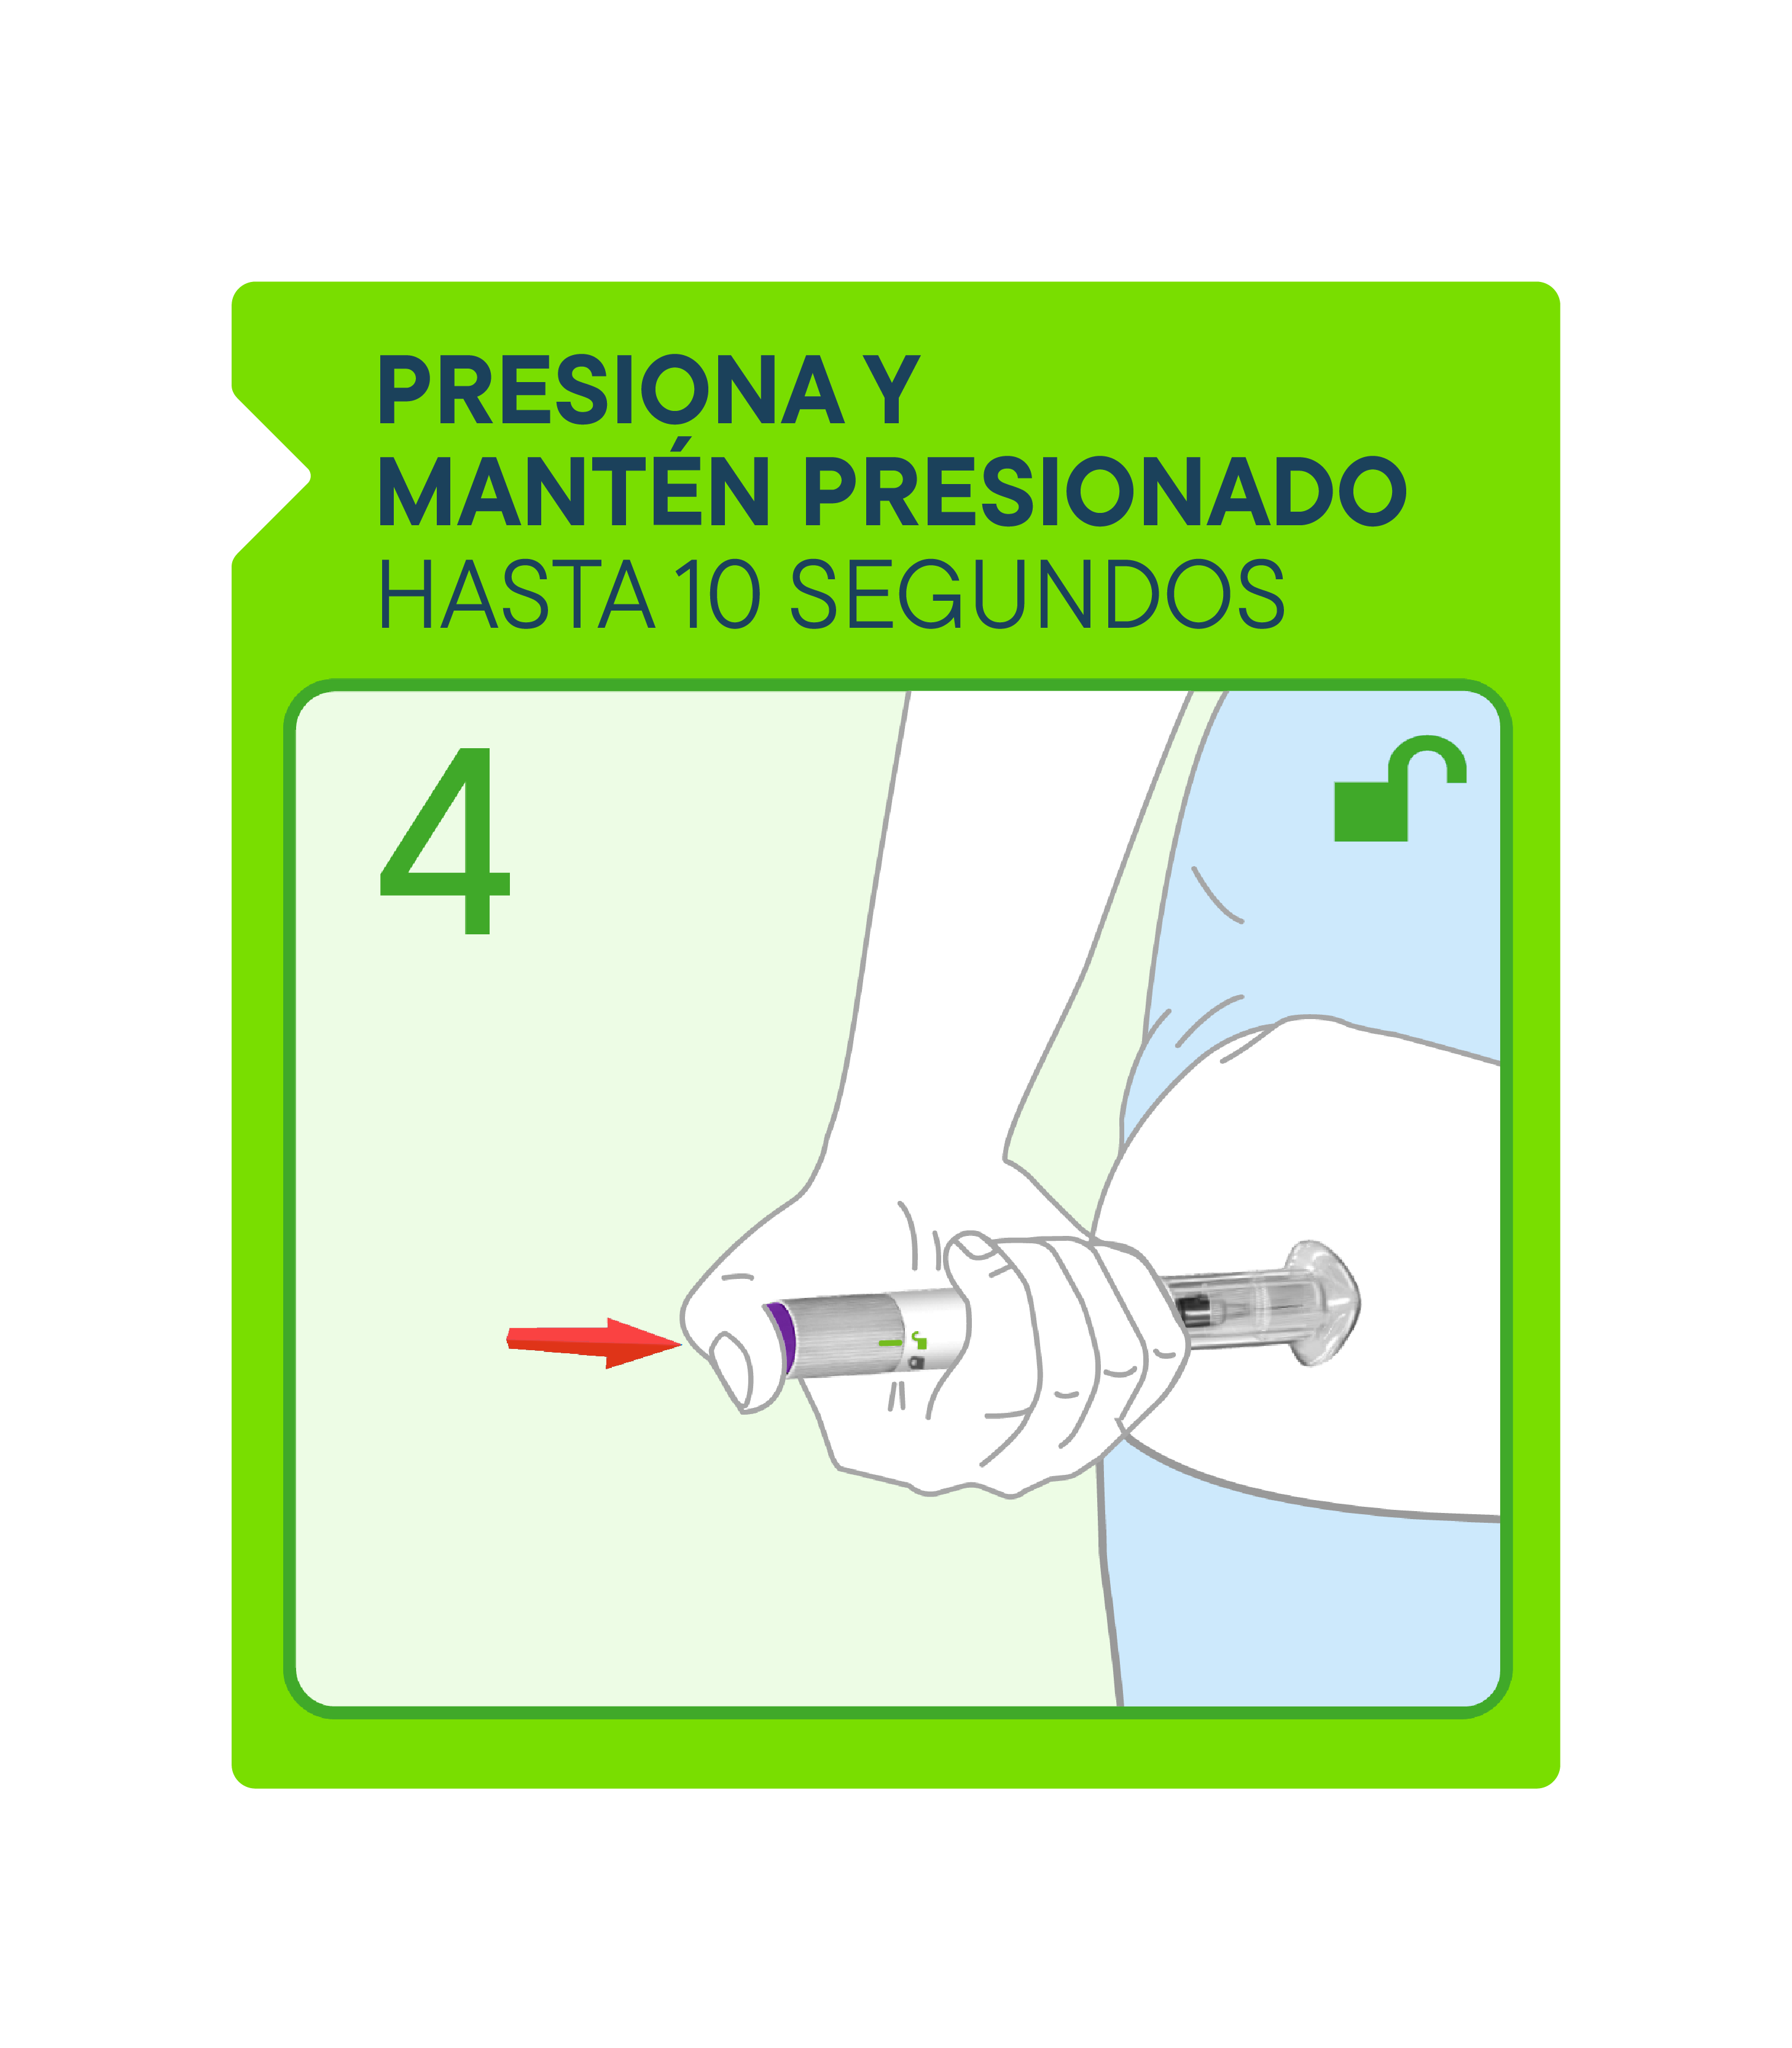 Ilustración de una mano presionando el botón de la pluma Zepbound para inyectarla.